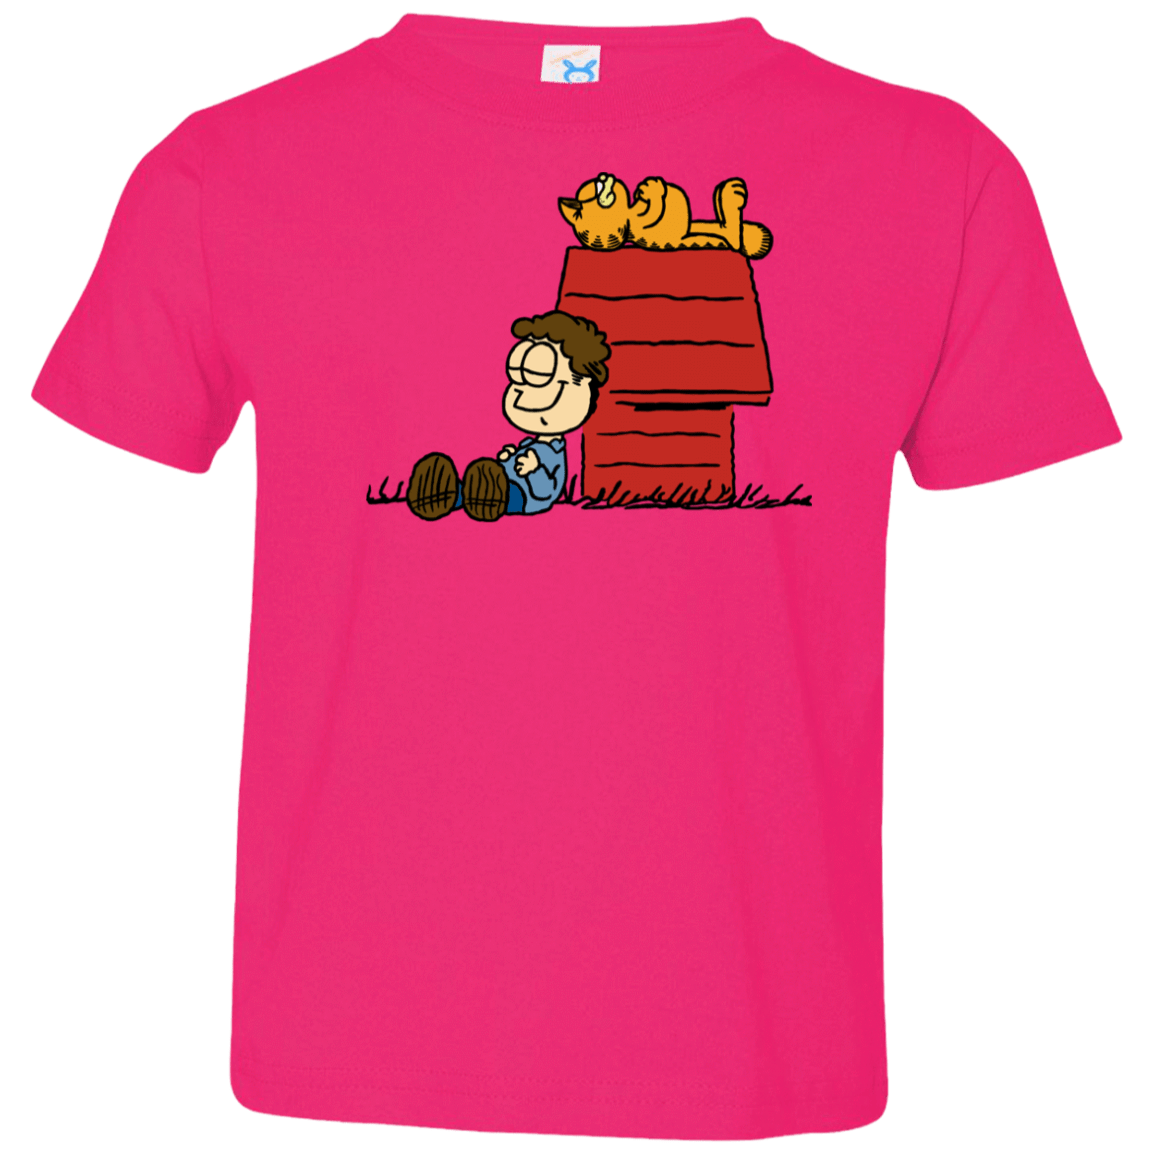 T-Shirts Hot Pink / 2T Jon Brown Toddler Premium T-Shirt